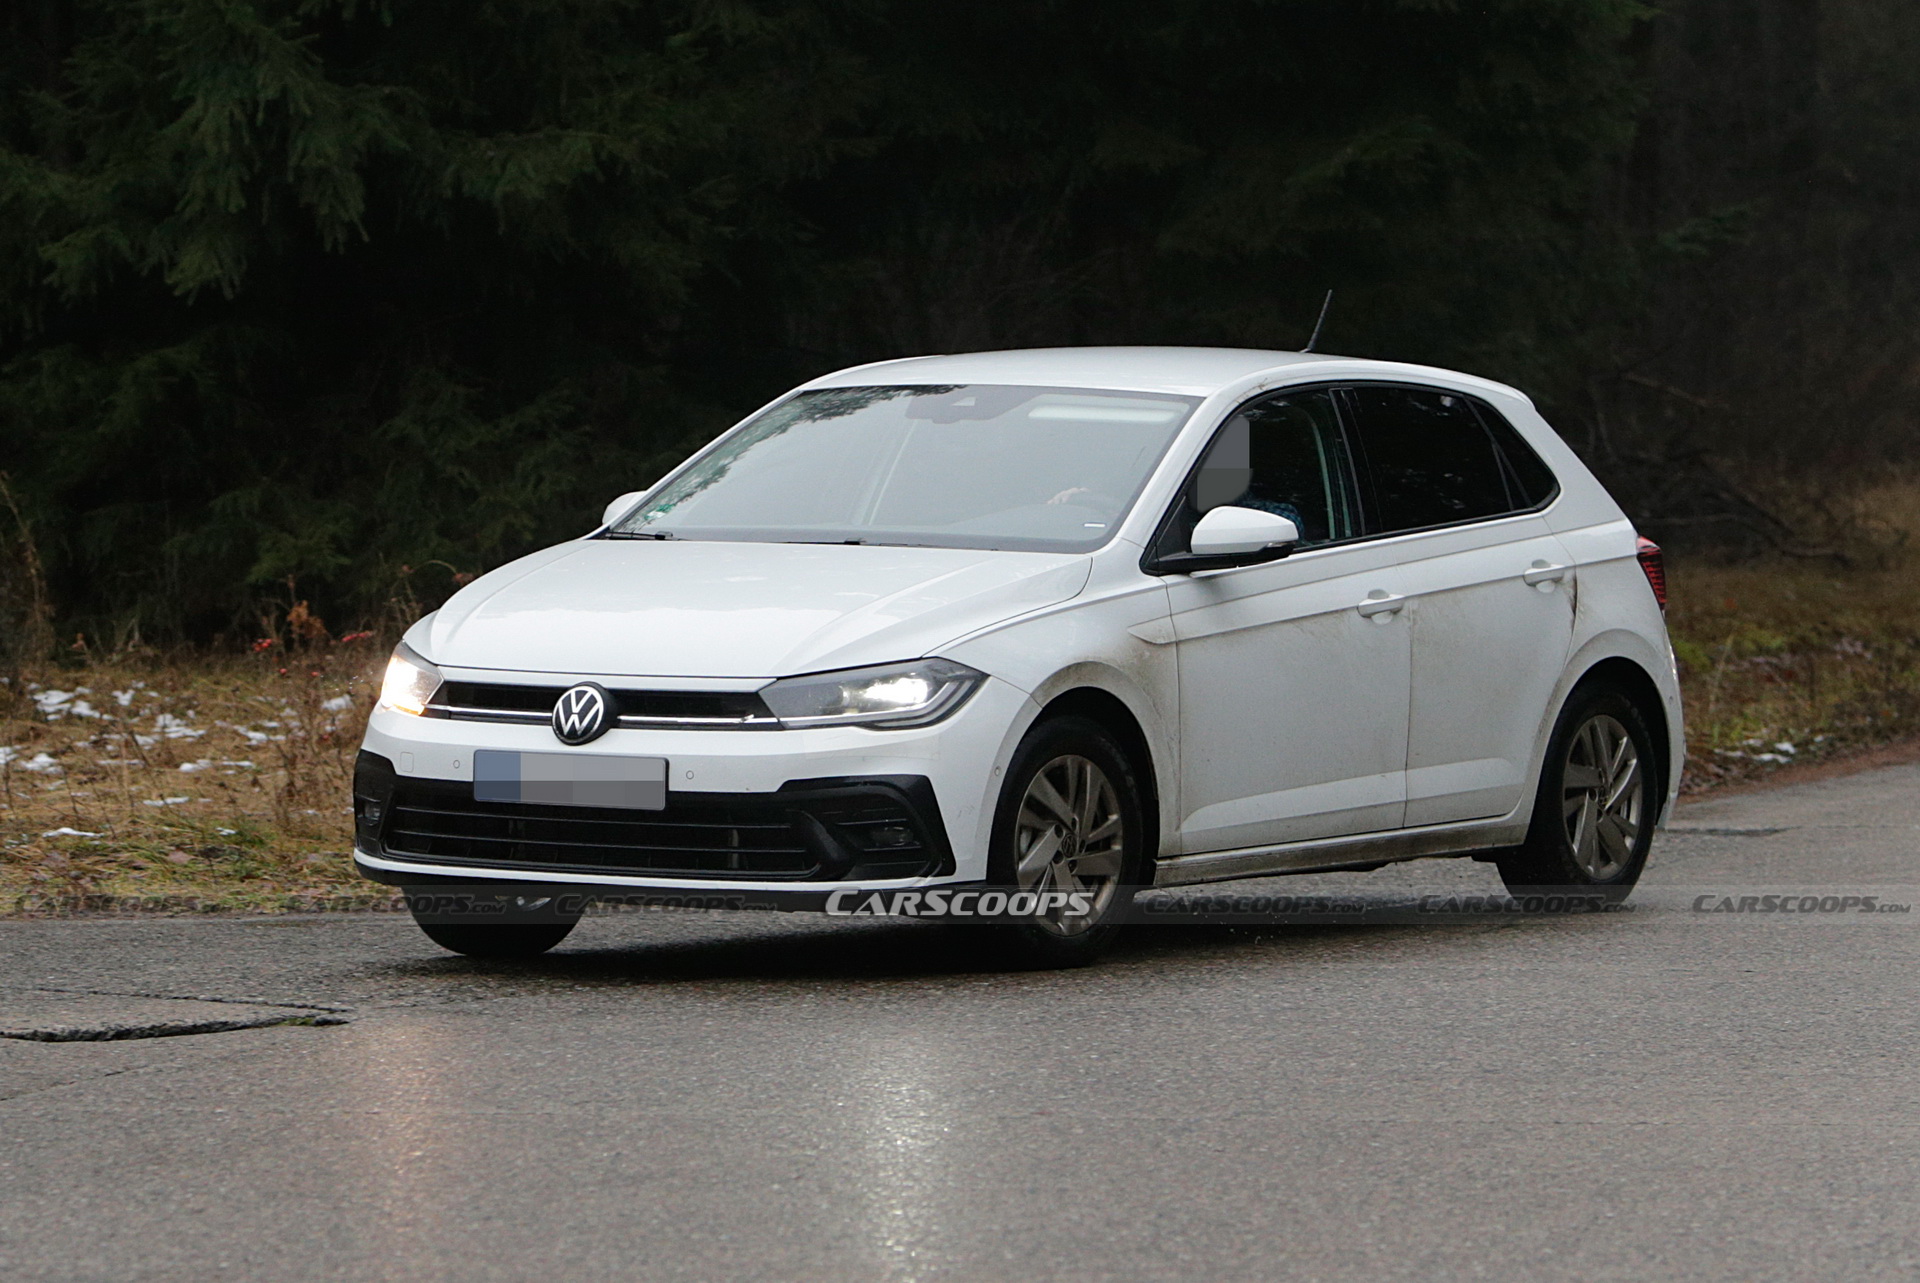 Volkswagen Polo công bố bản cập nhật mới, hé lộ đèn pha cải tiến - Ảnh 2.